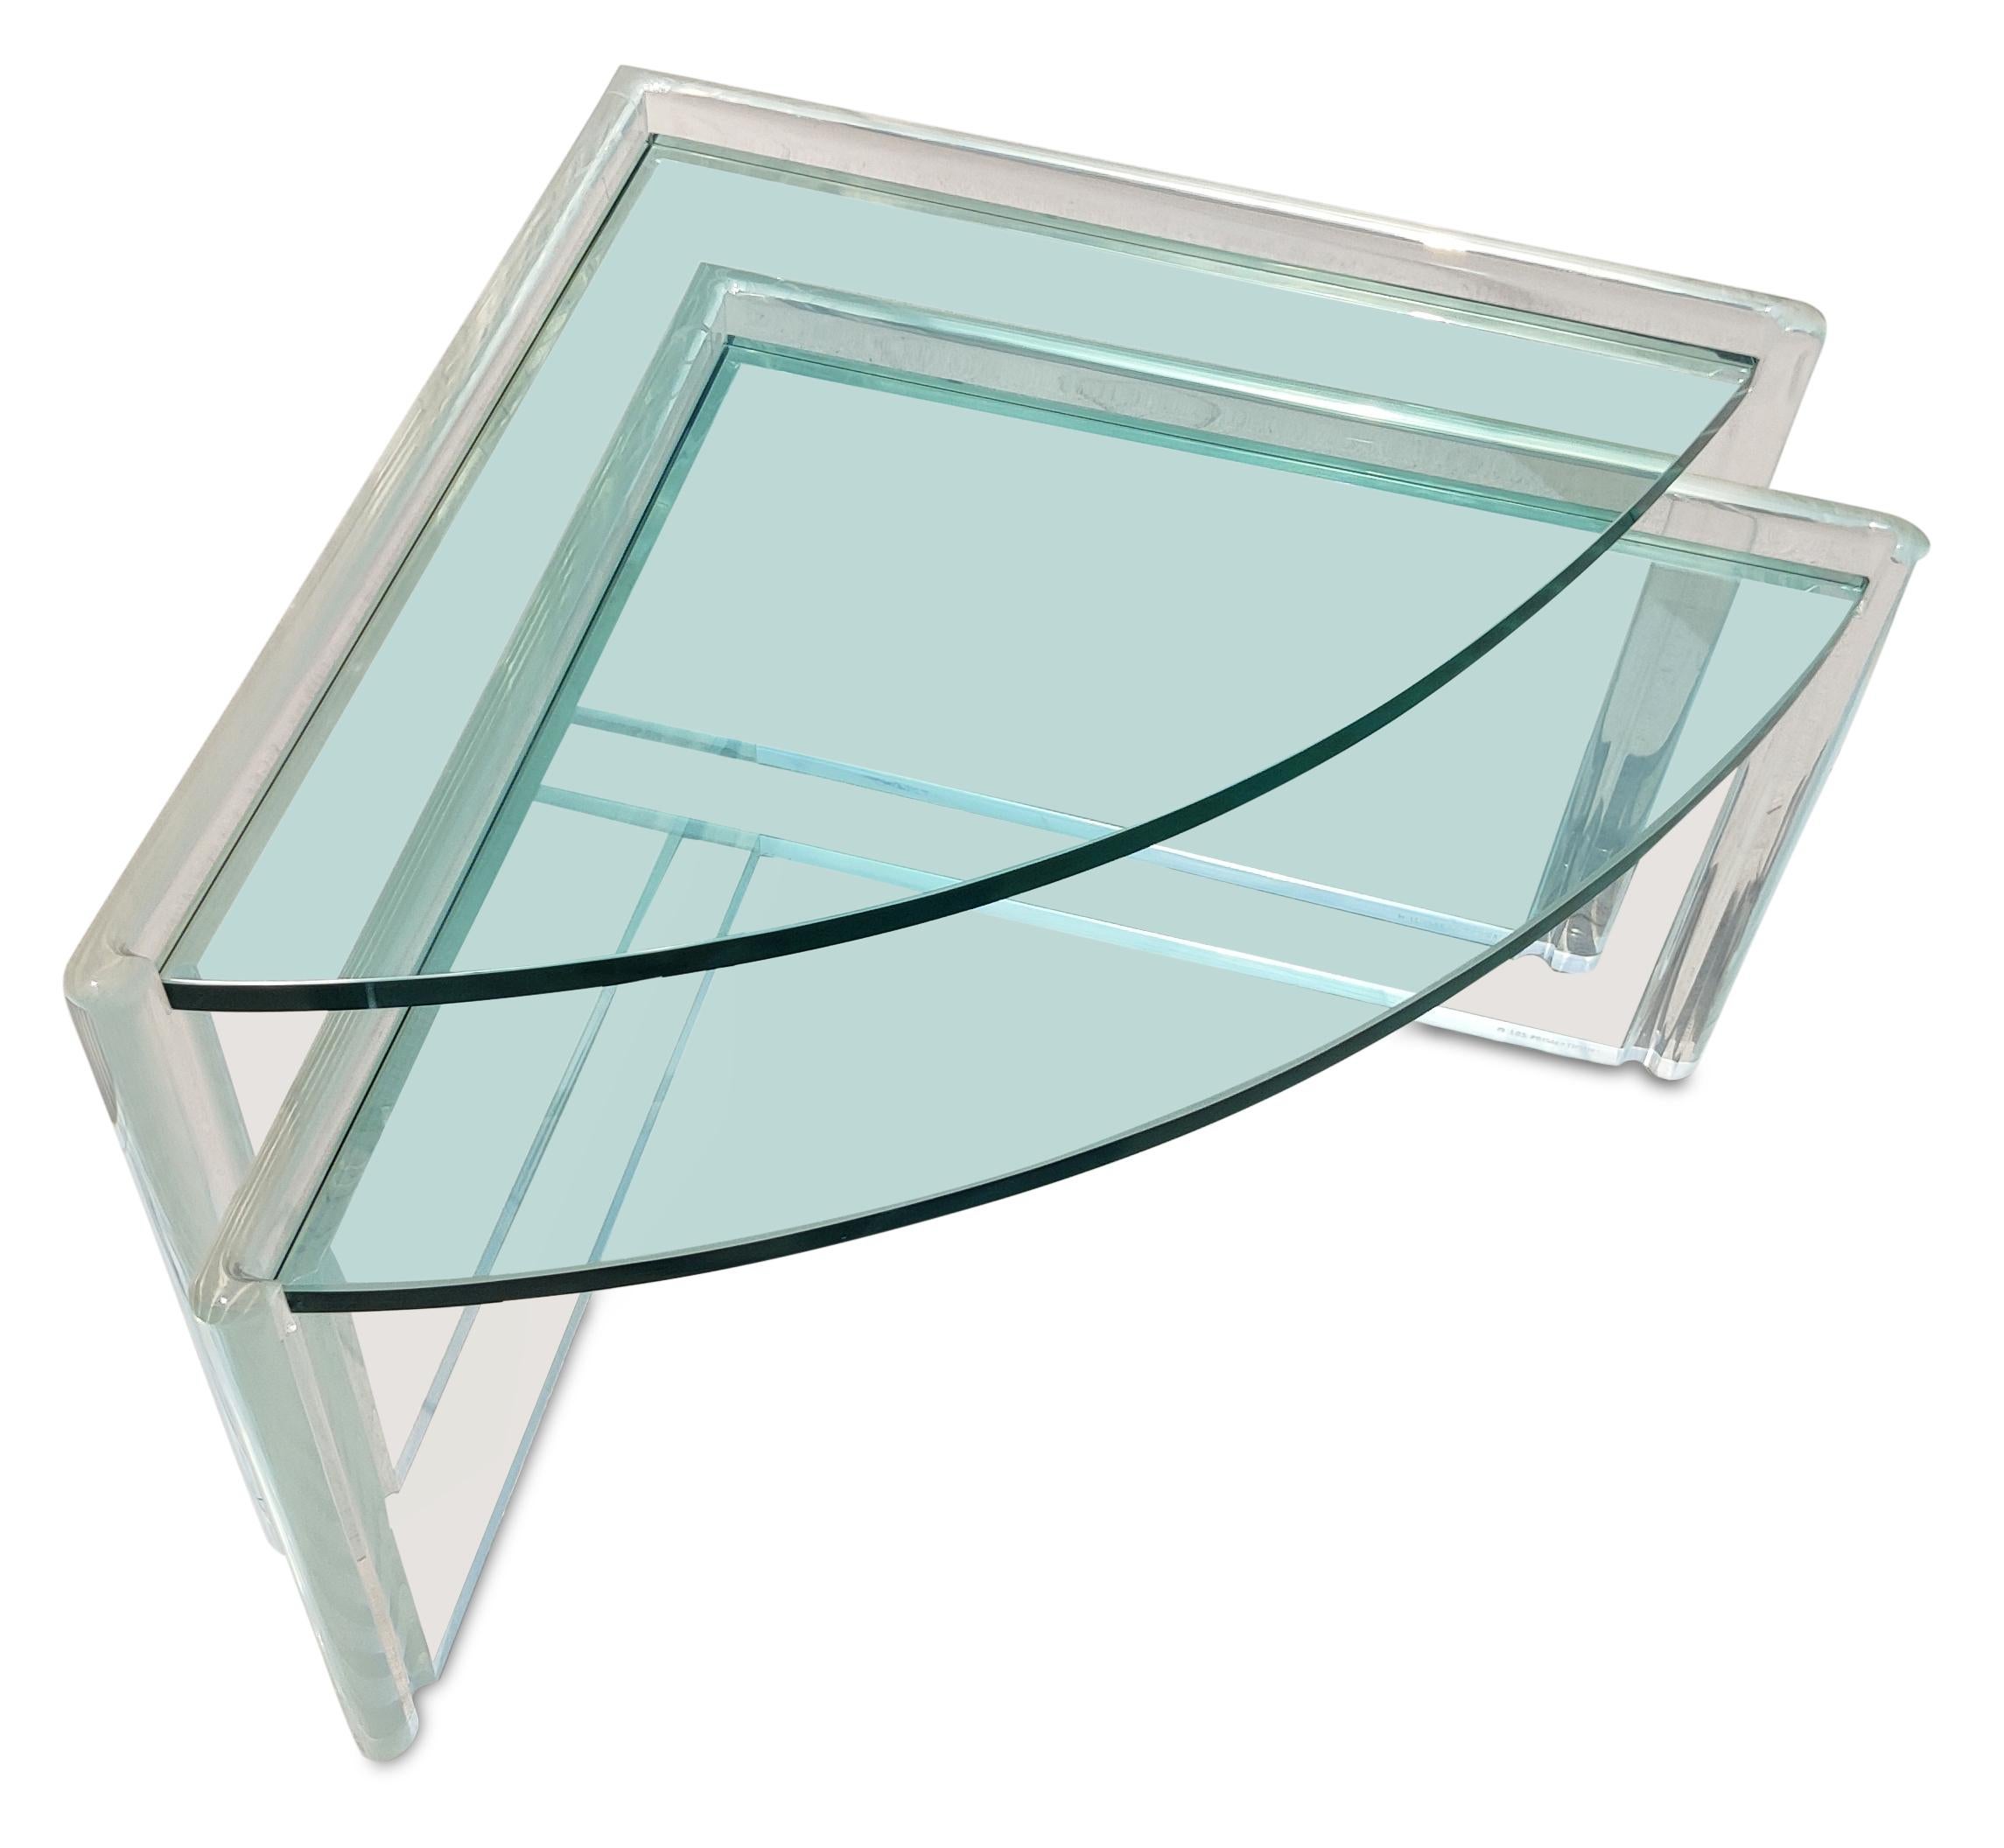 Diese atemberaubenden Tische aus Lucit und Glas wurden in den 1990er Jahren vom Hersteller Les Prismatiques hergestellt. Jeder Tisch hat die Form eines abgerundeten Dreiecks und ist aus 1,5 Zoll dickem Lucite und 3/4 Zoll dickem Glas gefertigt. Die